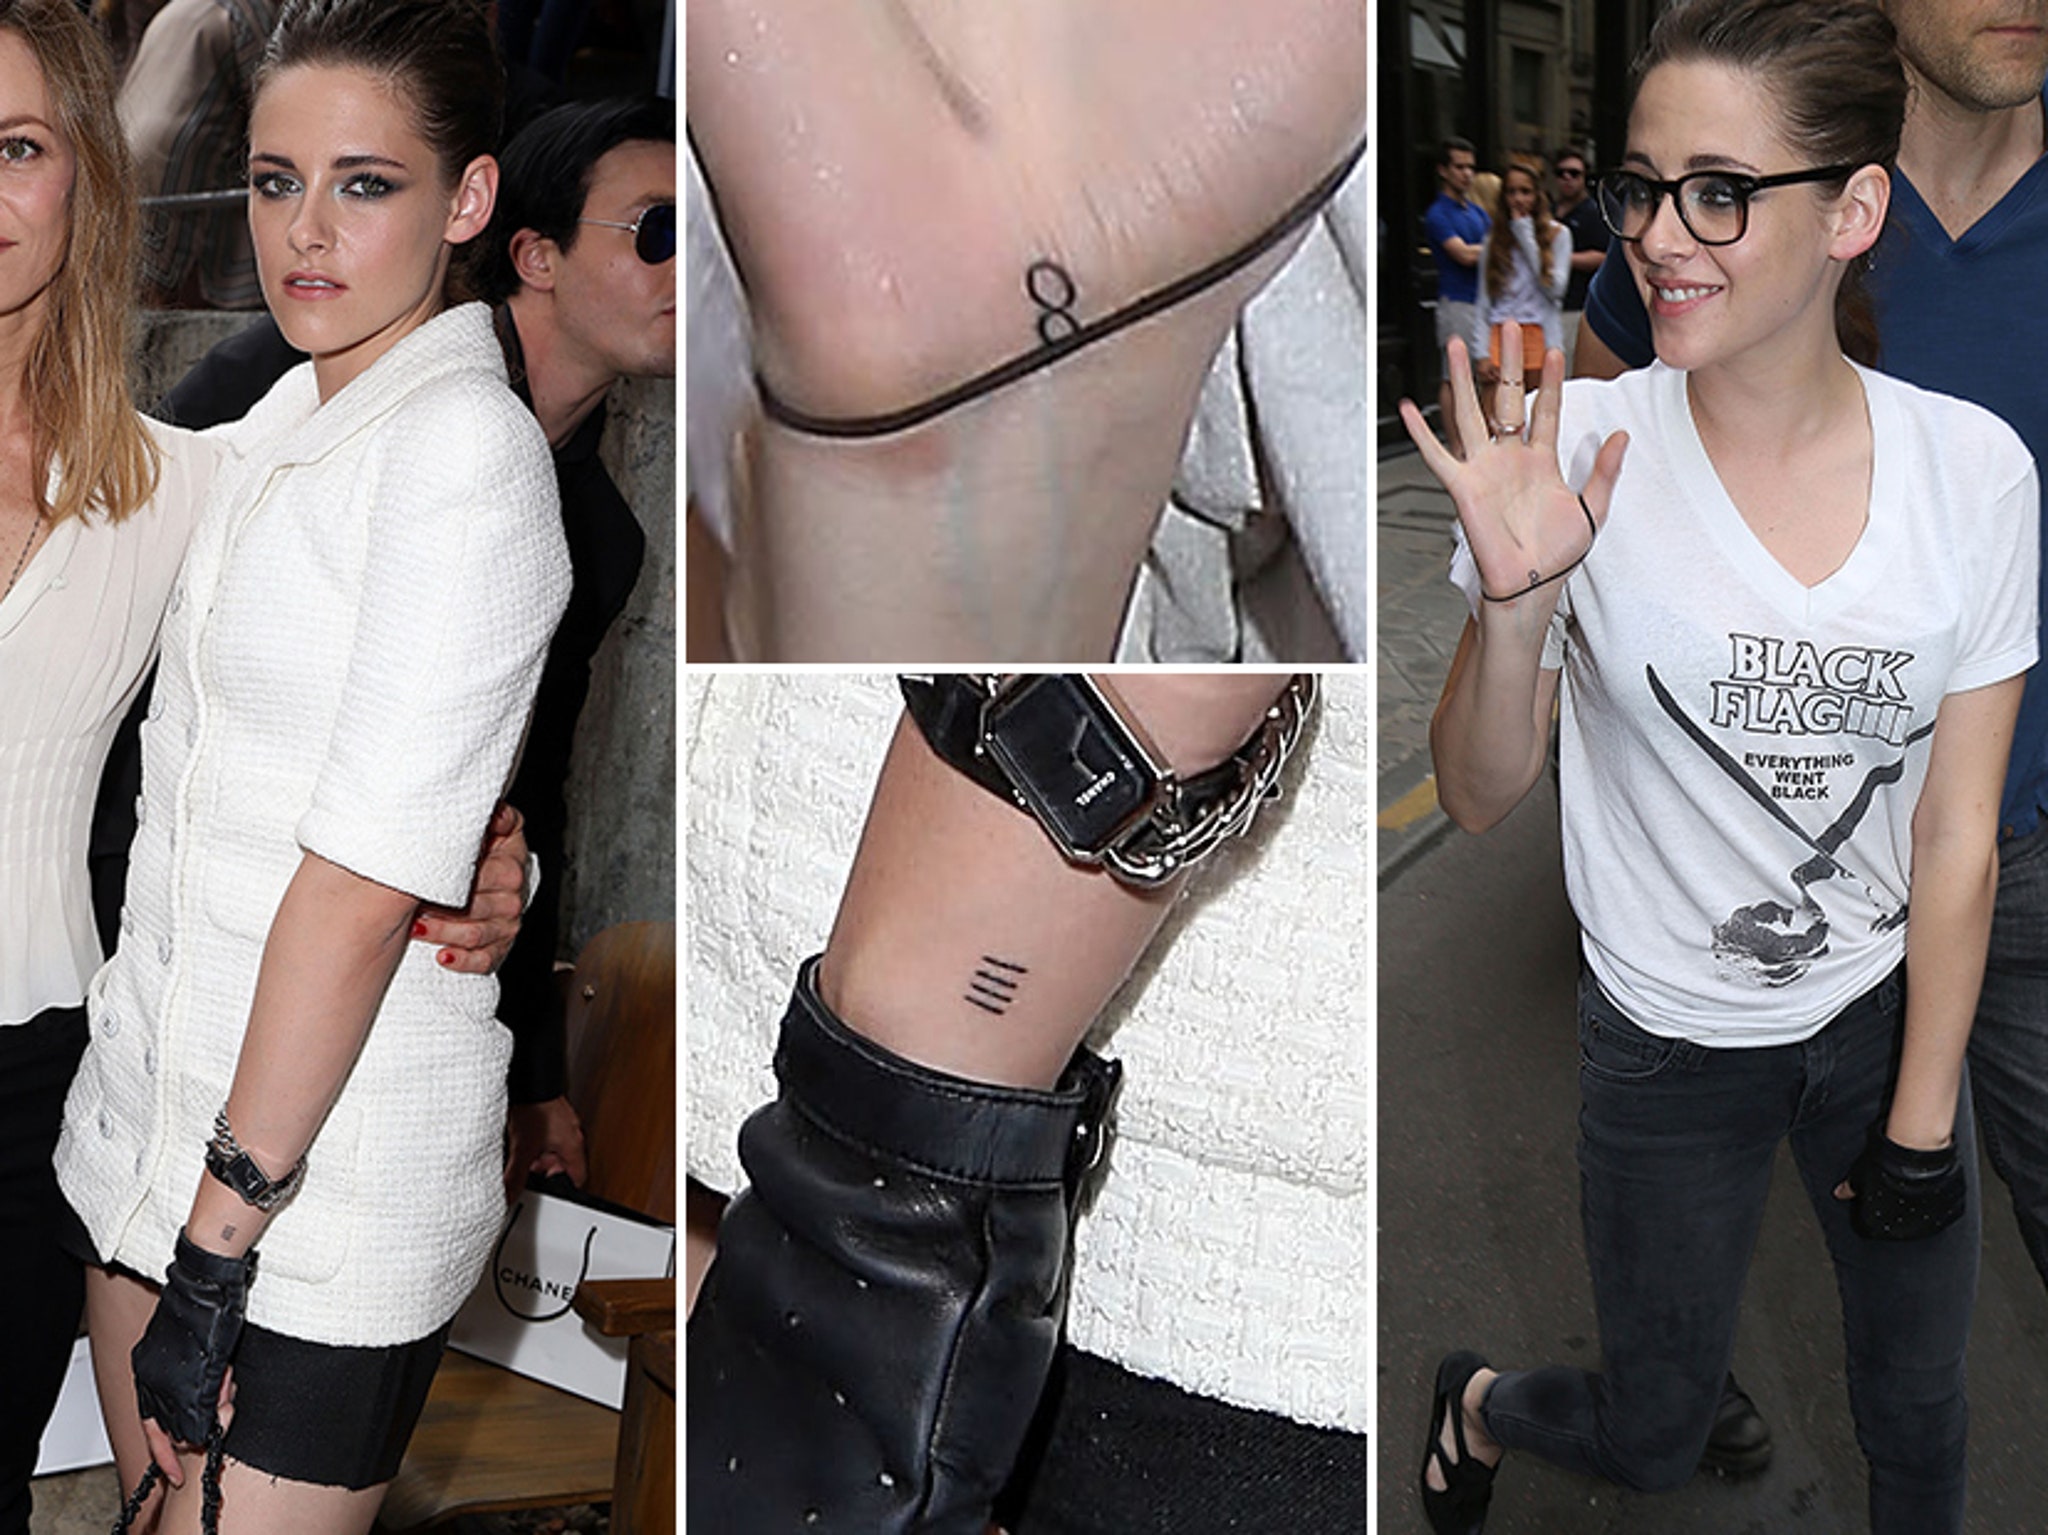 Kristen Stewart Shows Off Two New Tattoos In Paris